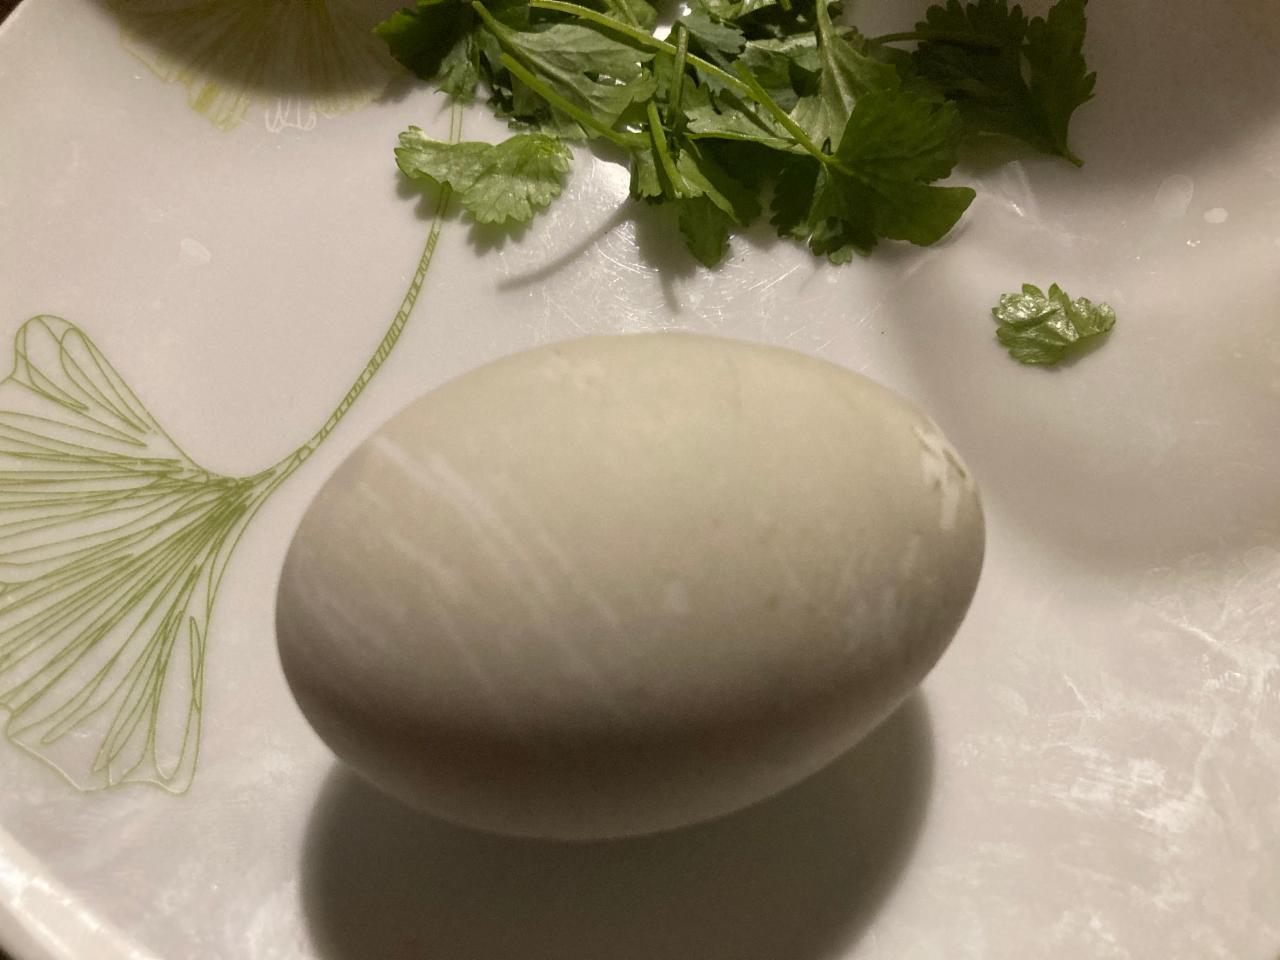 Fotografie - Balut (kachní vejce s embryem)